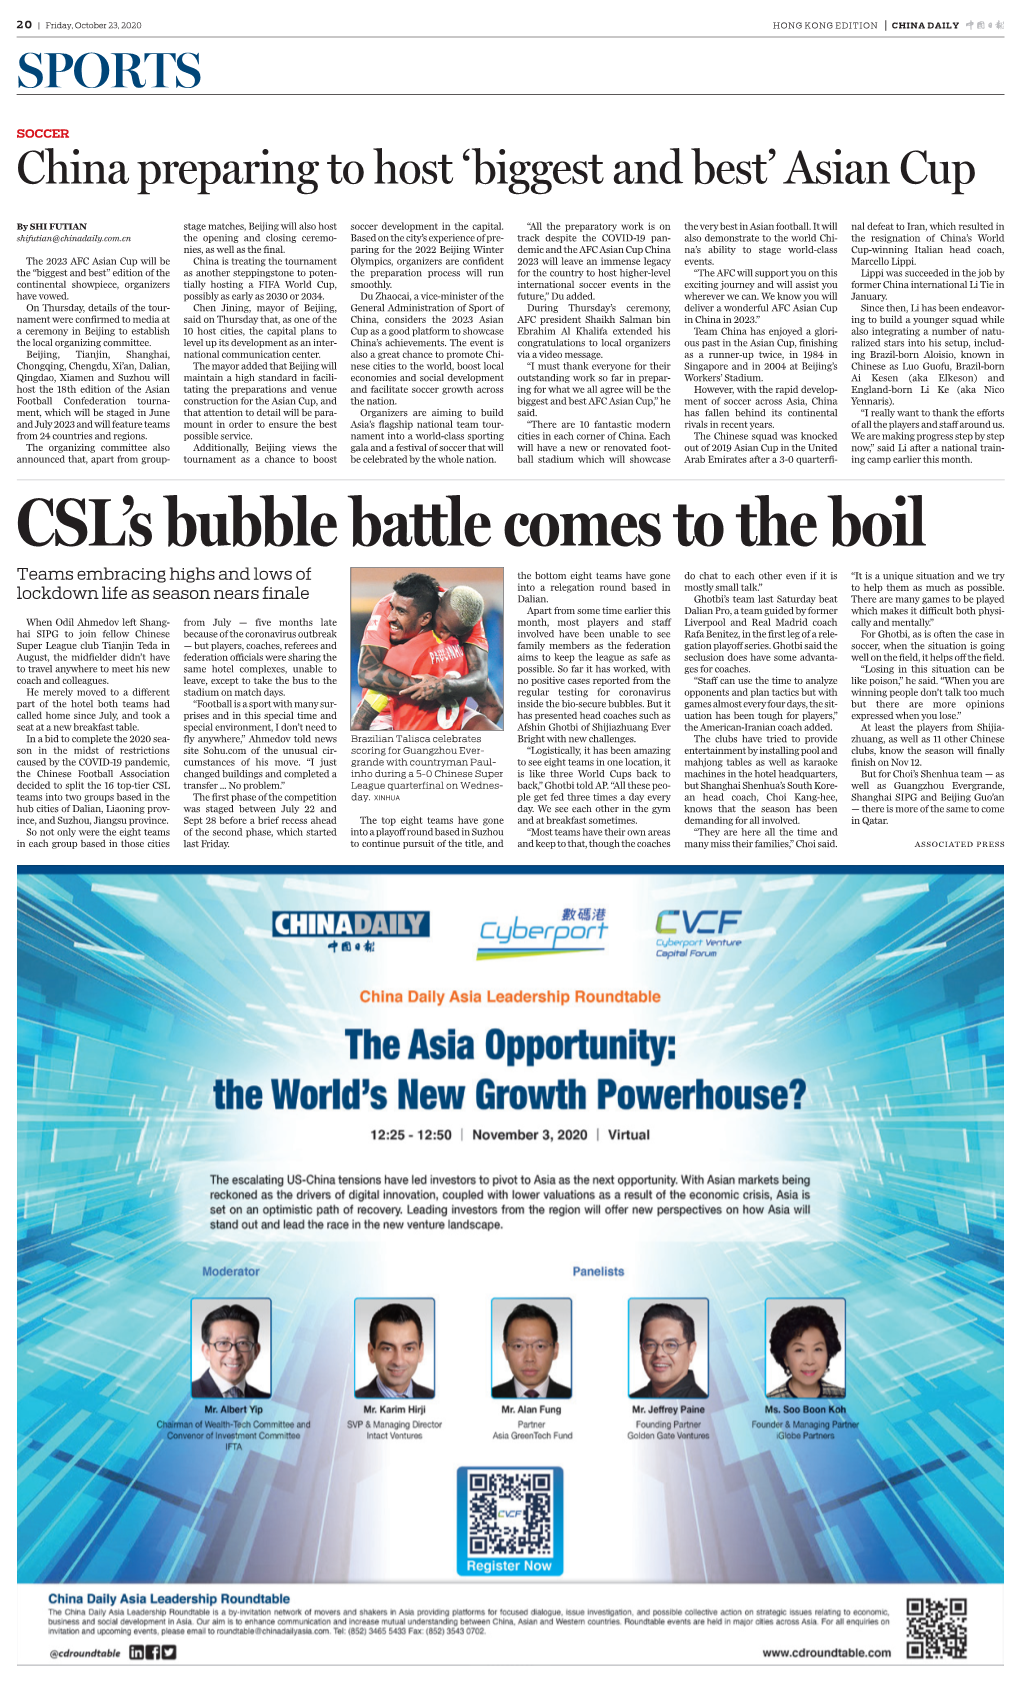 CSL's Bubble Battle Comes to the Boil